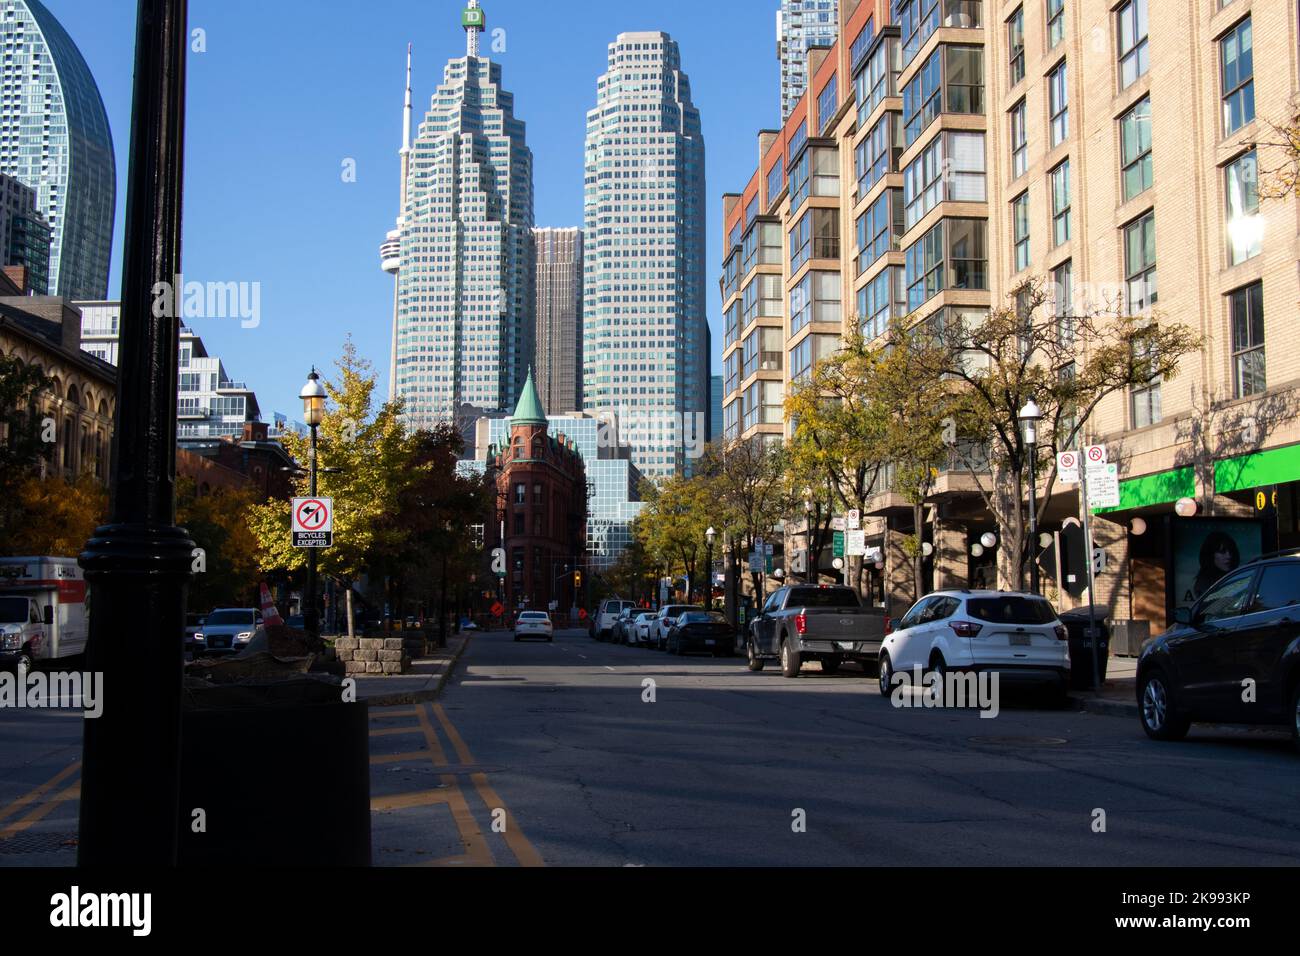 La célèbre ligne d'horizon de Toronto, Front Street, est vue en début de matinée, en descendant la rue dans le célèbre Gooderham Building le jour de l'automne. Banque D'Images